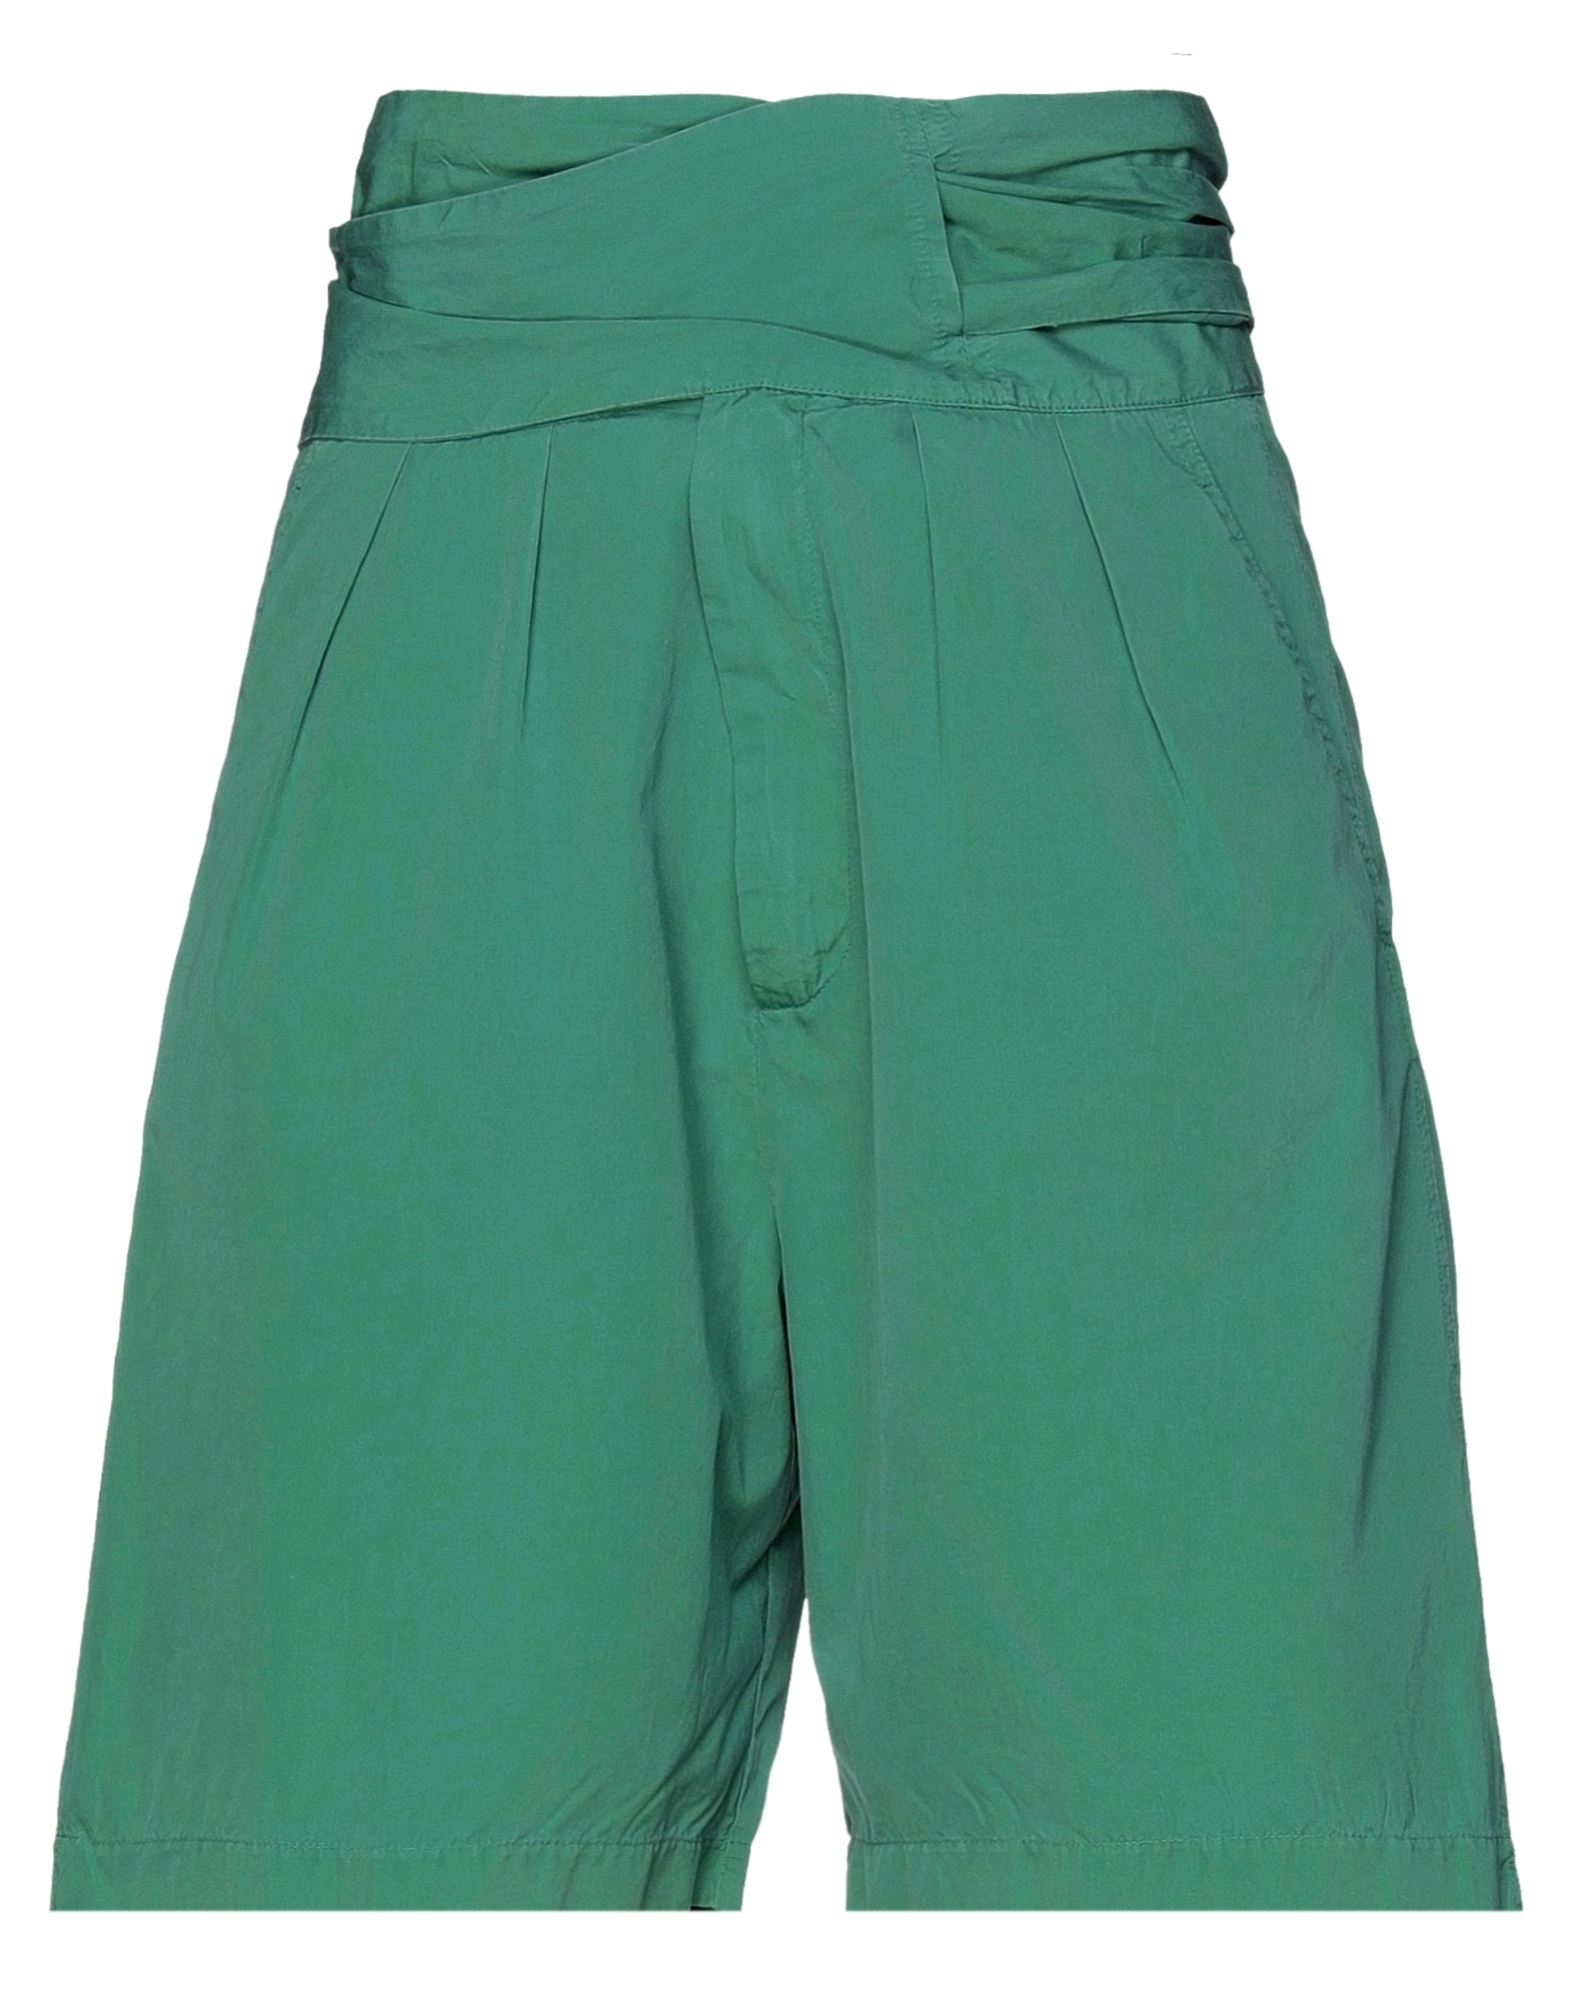 Womens Clothing Shorts Knee-length shorts and long shorts Green Mauro Grifoni Satin Shorts & Bermuda Shorts in Emerald Green 